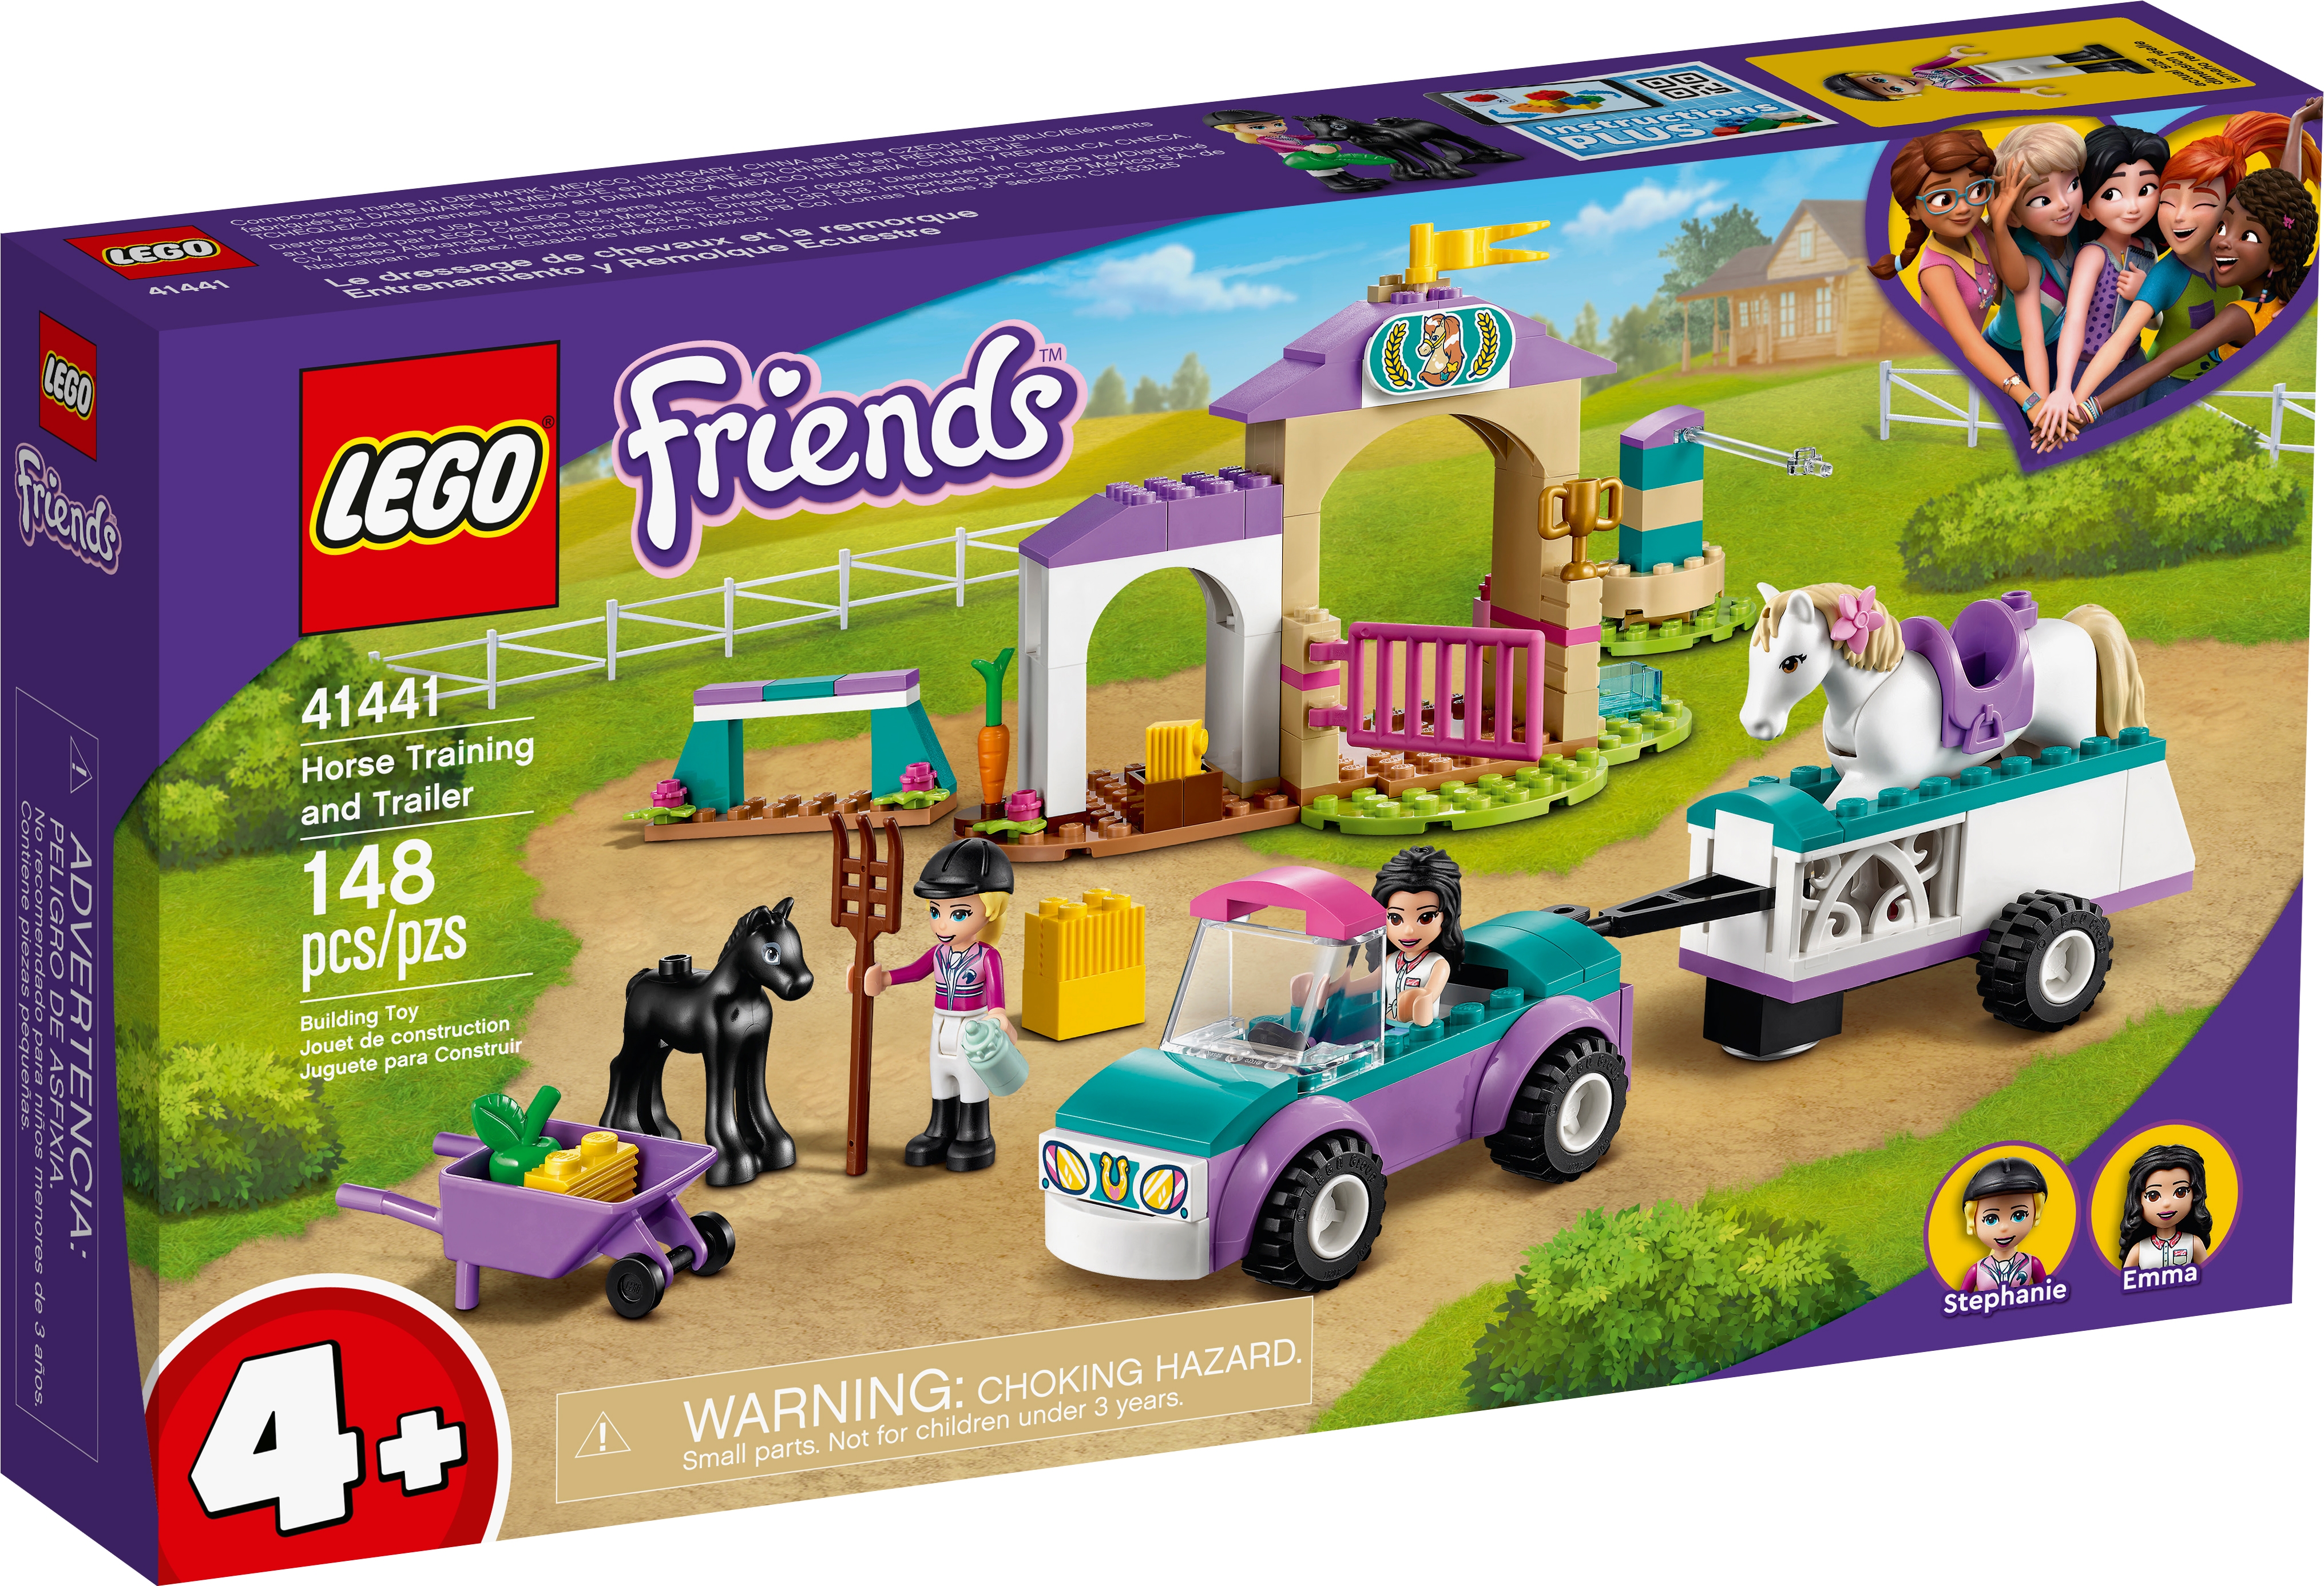 Ratsastusvalmennus ja traileri 41441 | Friends | Virallinen LEGO®-kaupasta  FI